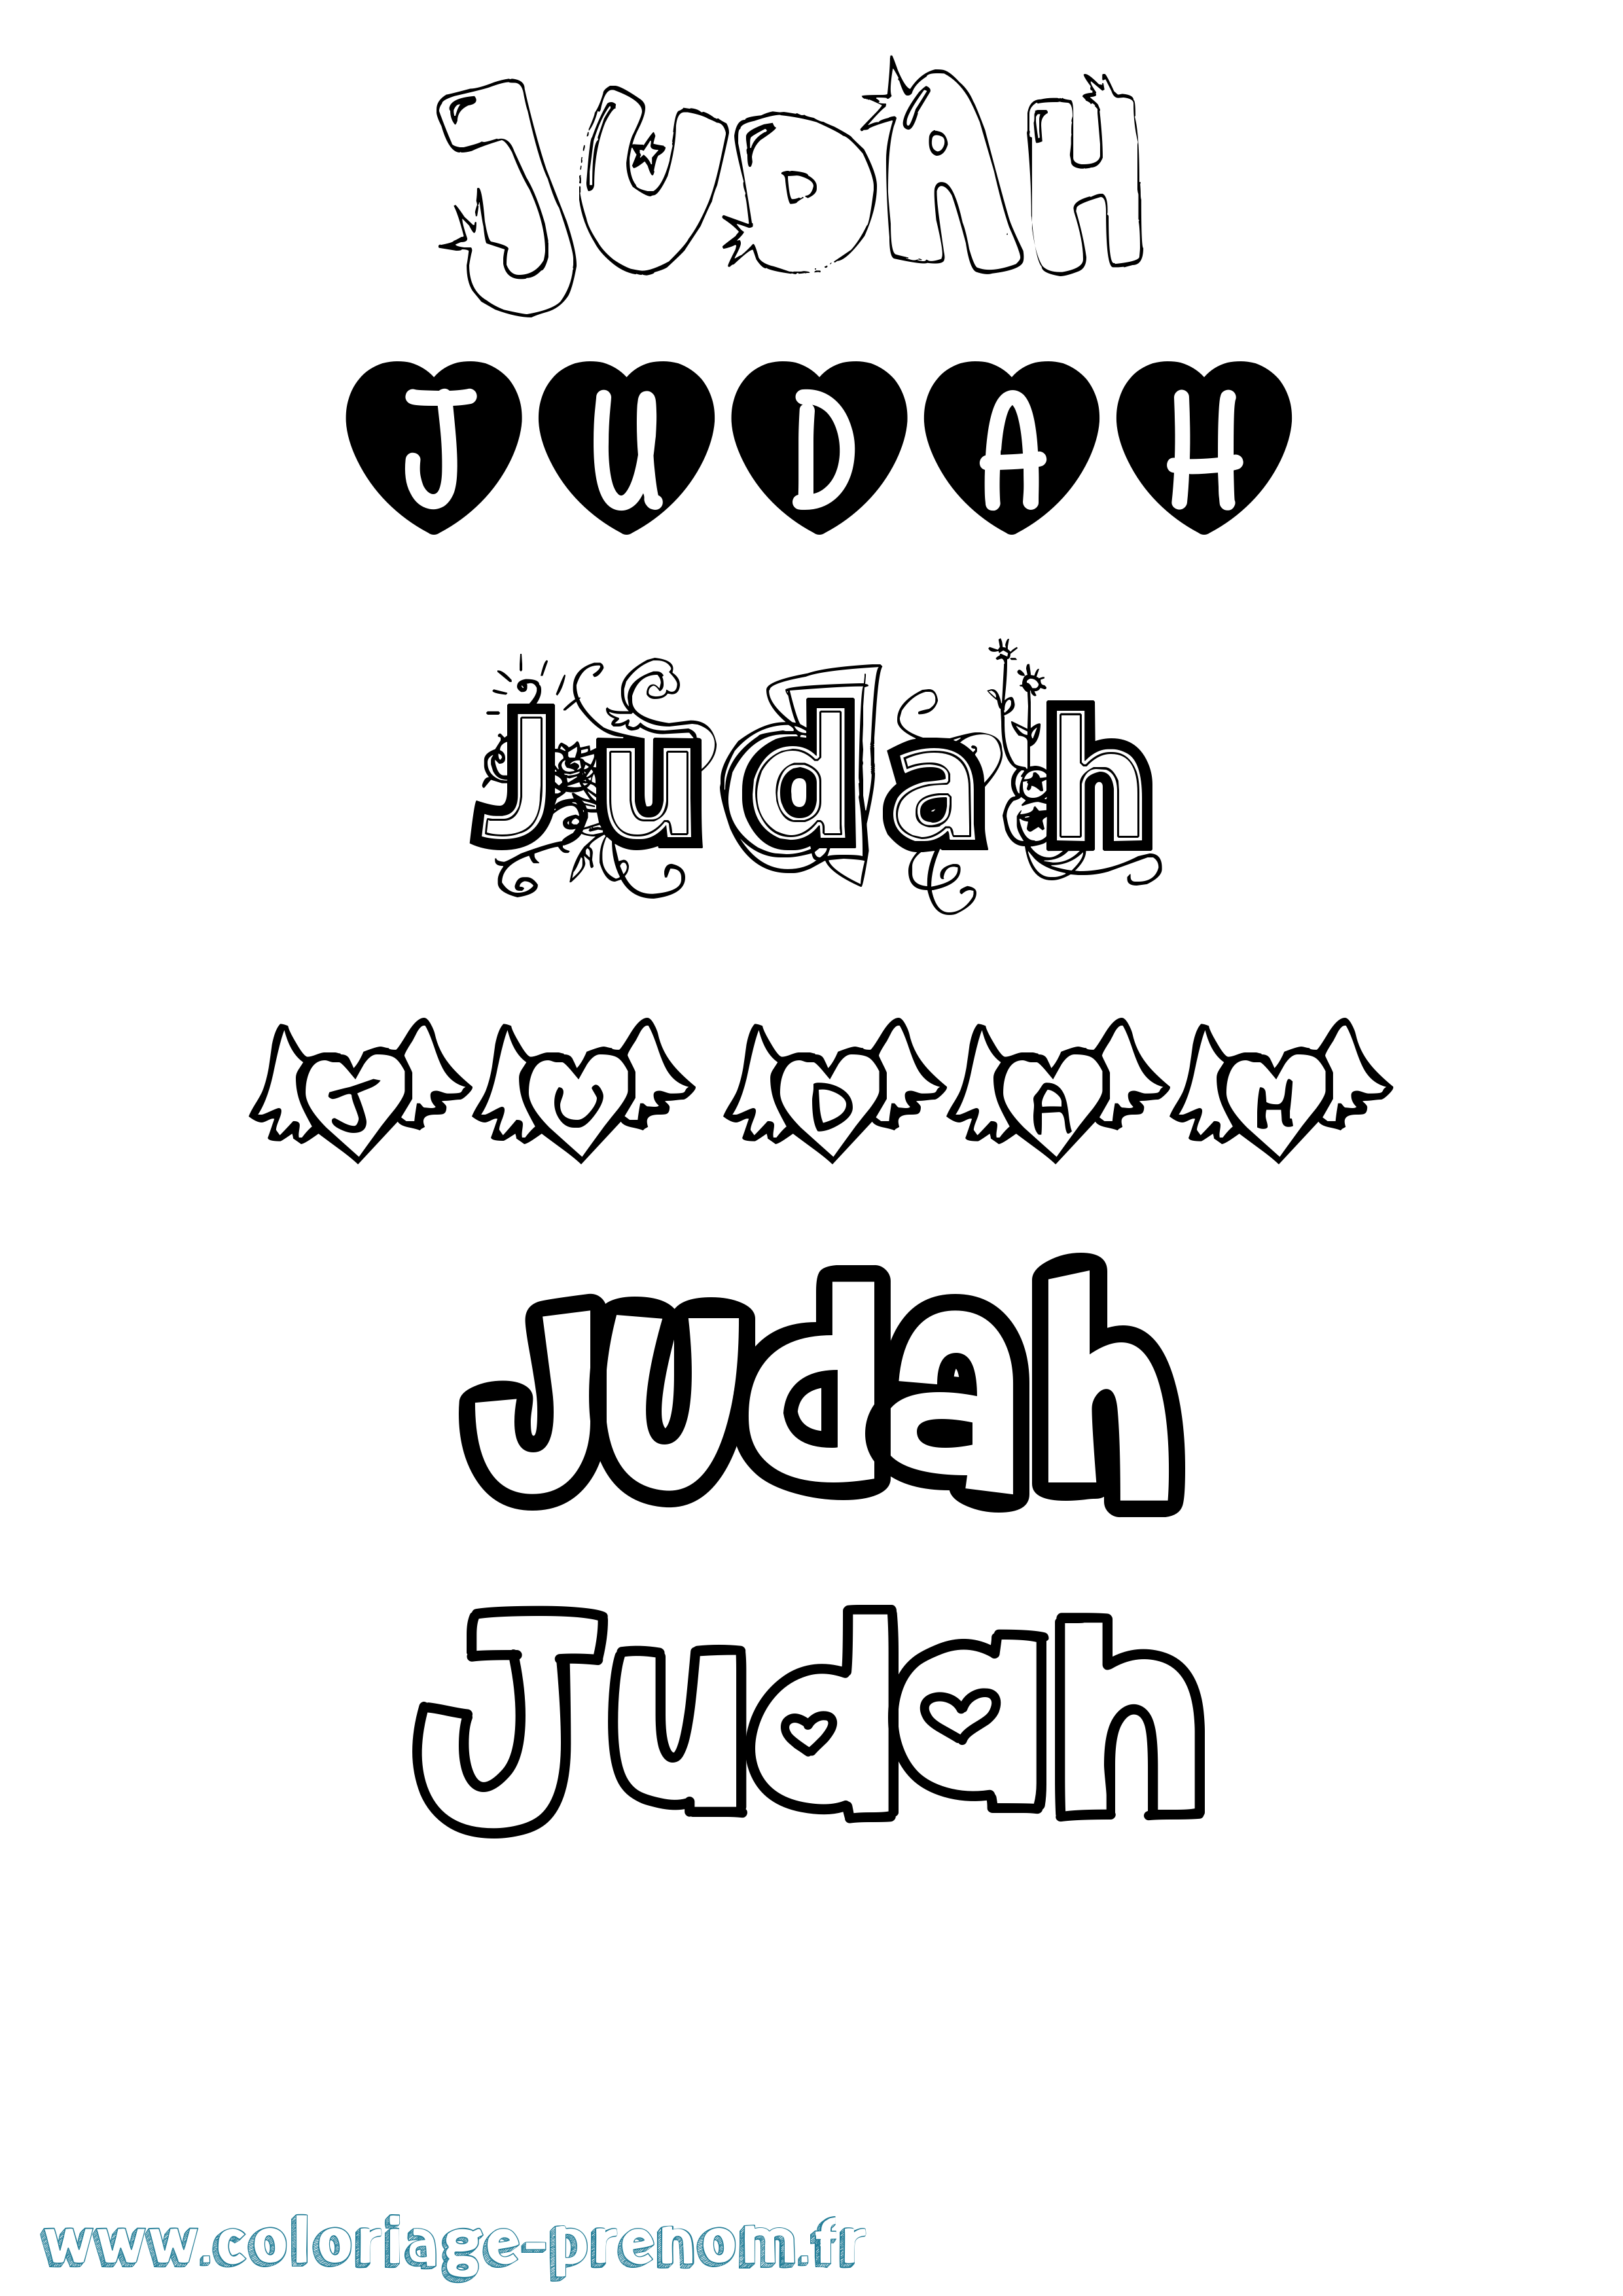 Coloriage prénom Judah Girly